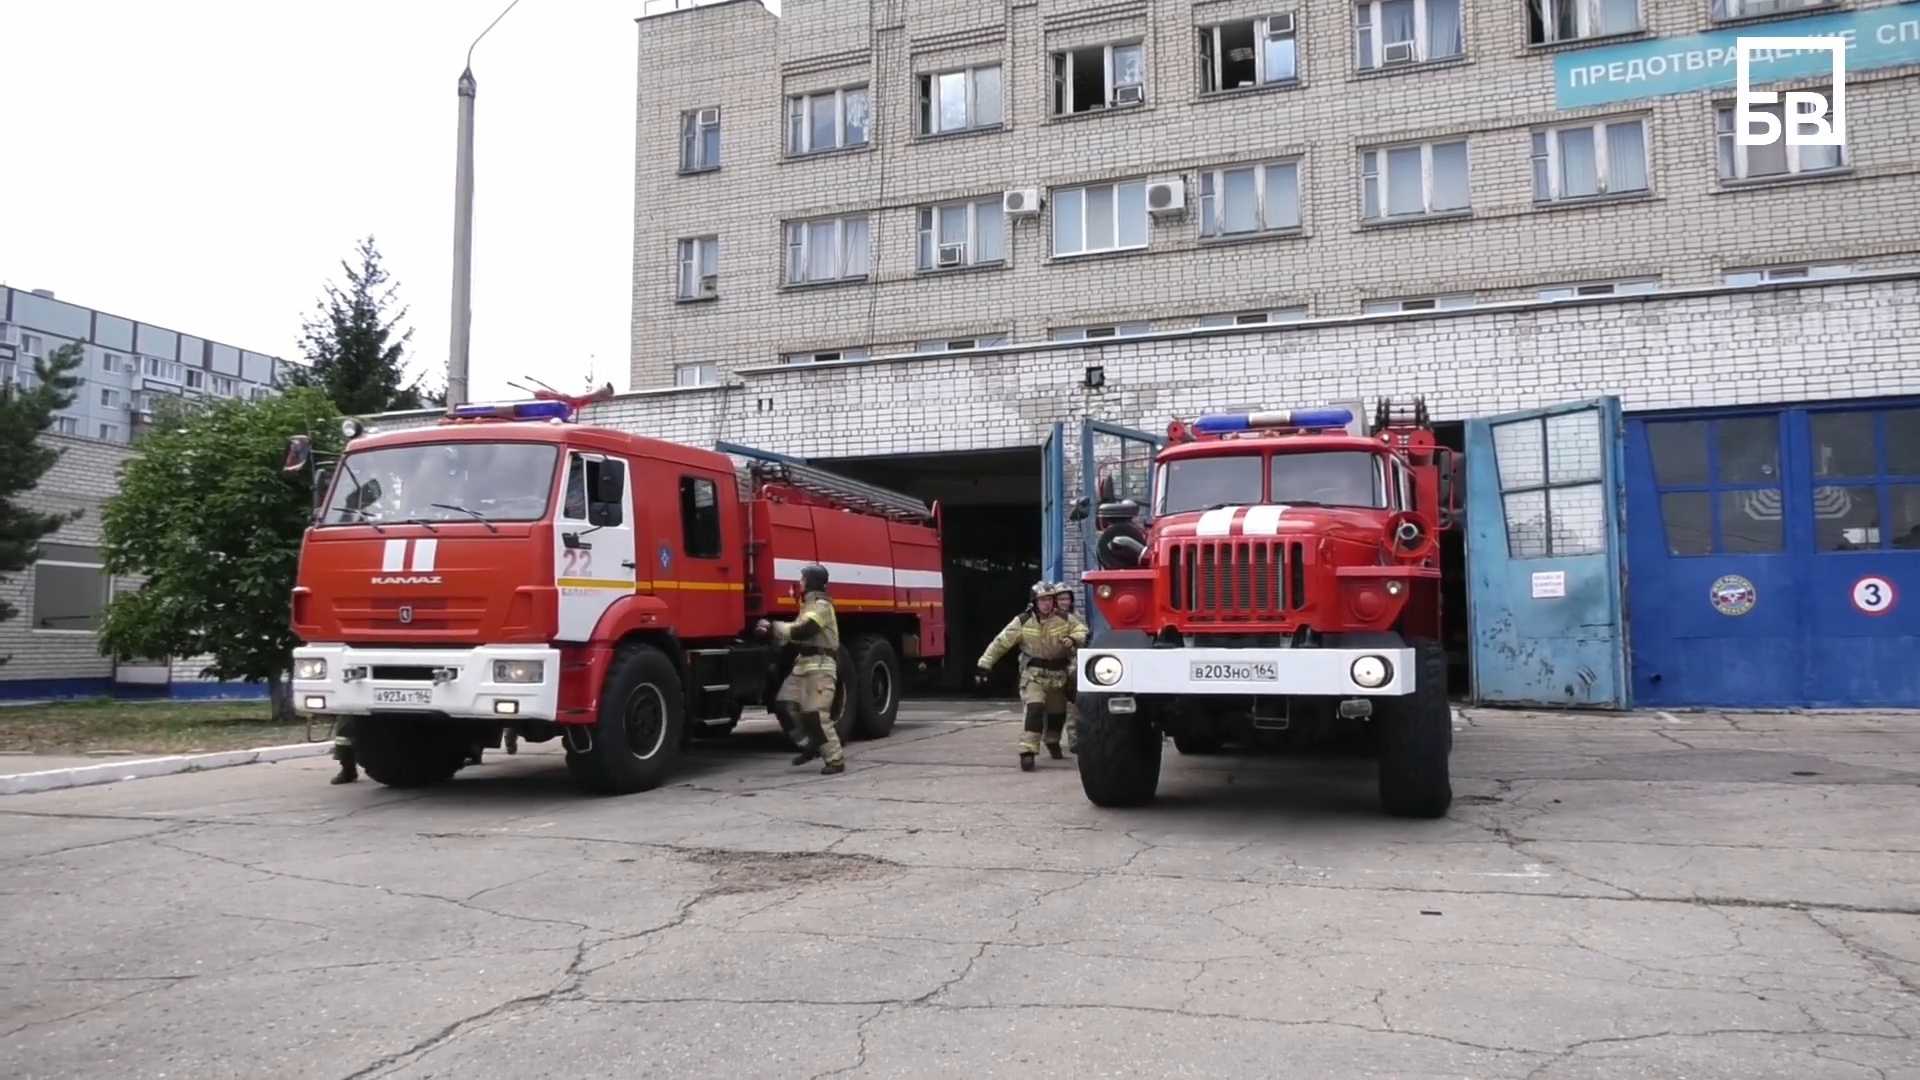 Пожарно-спасательные подразделения БМР работают в режиме повышенной готовности